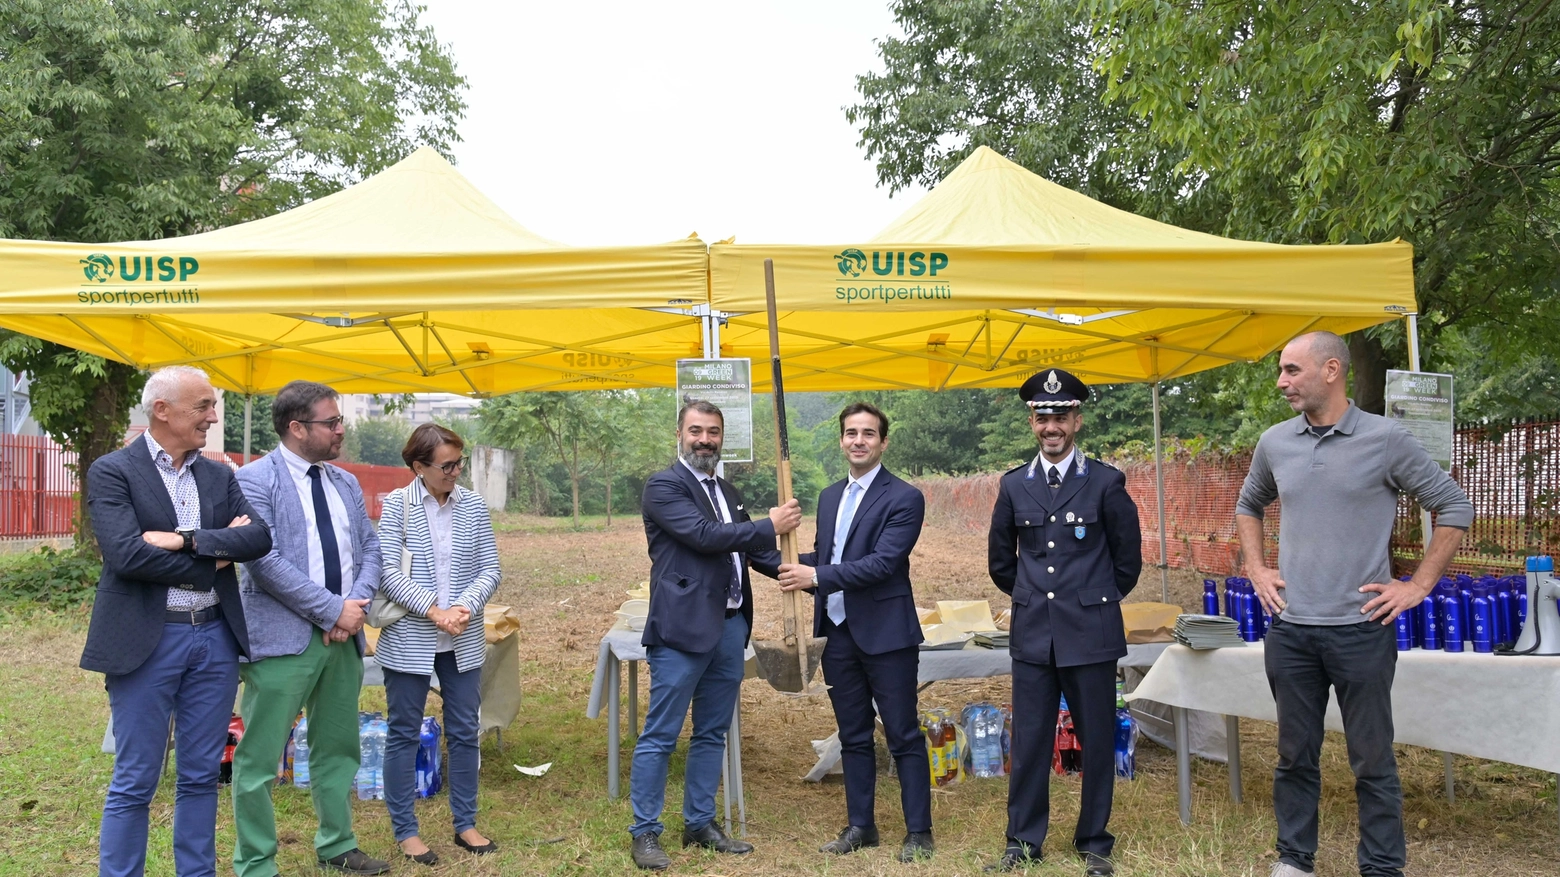 Milano, nasce il primo "Giardino condiviso" in mano agli studenti